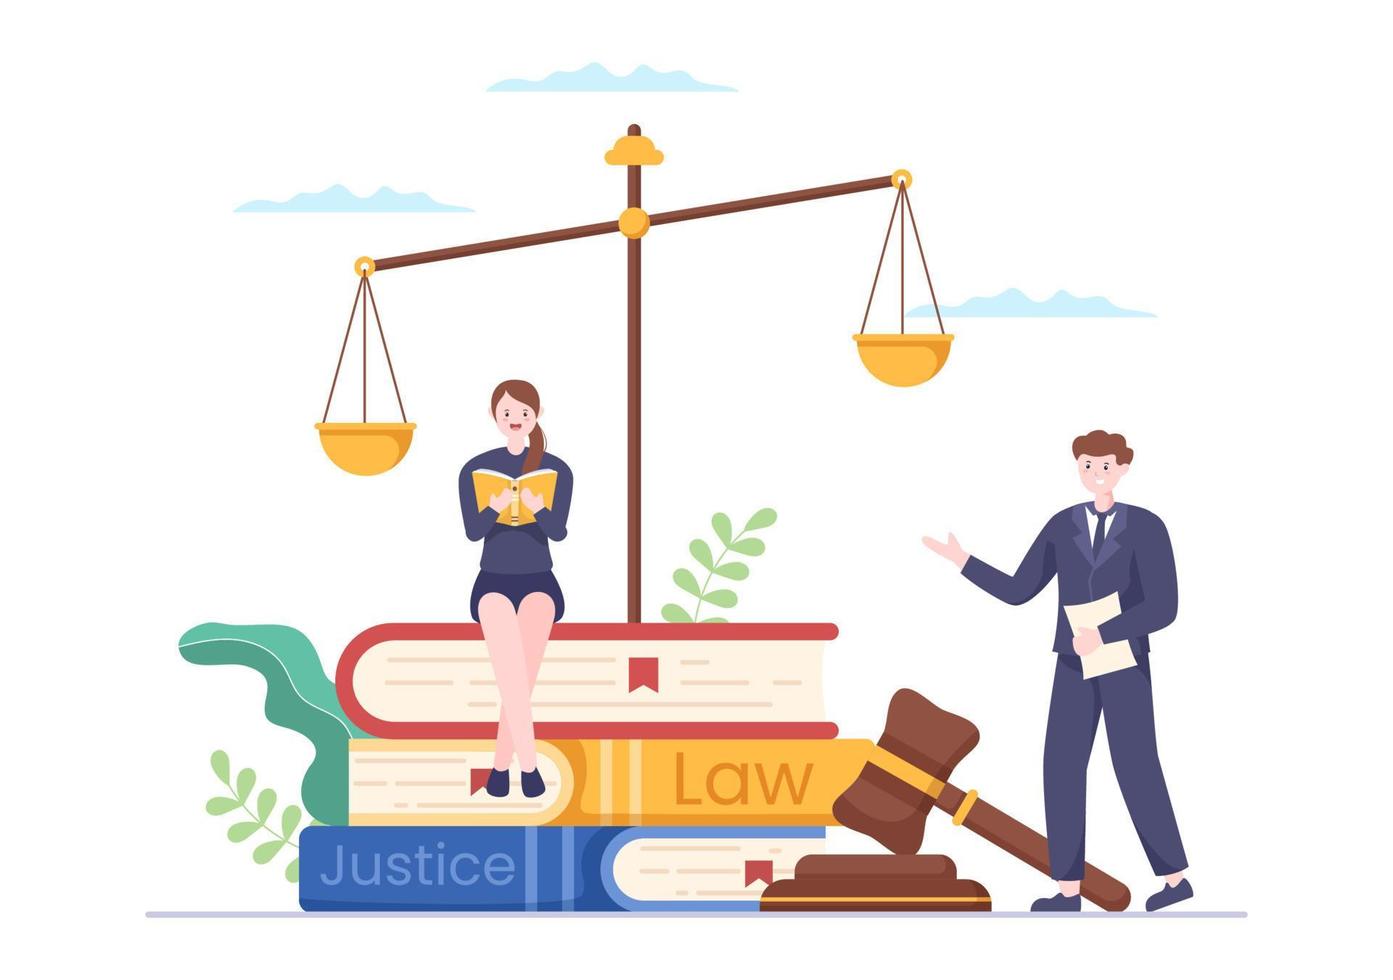 advogado, advogado e justiça com leis, balanças, edifícios, livro ou martelo de juiz de madeira para consultor em ilustração de desenho animado plana vetor